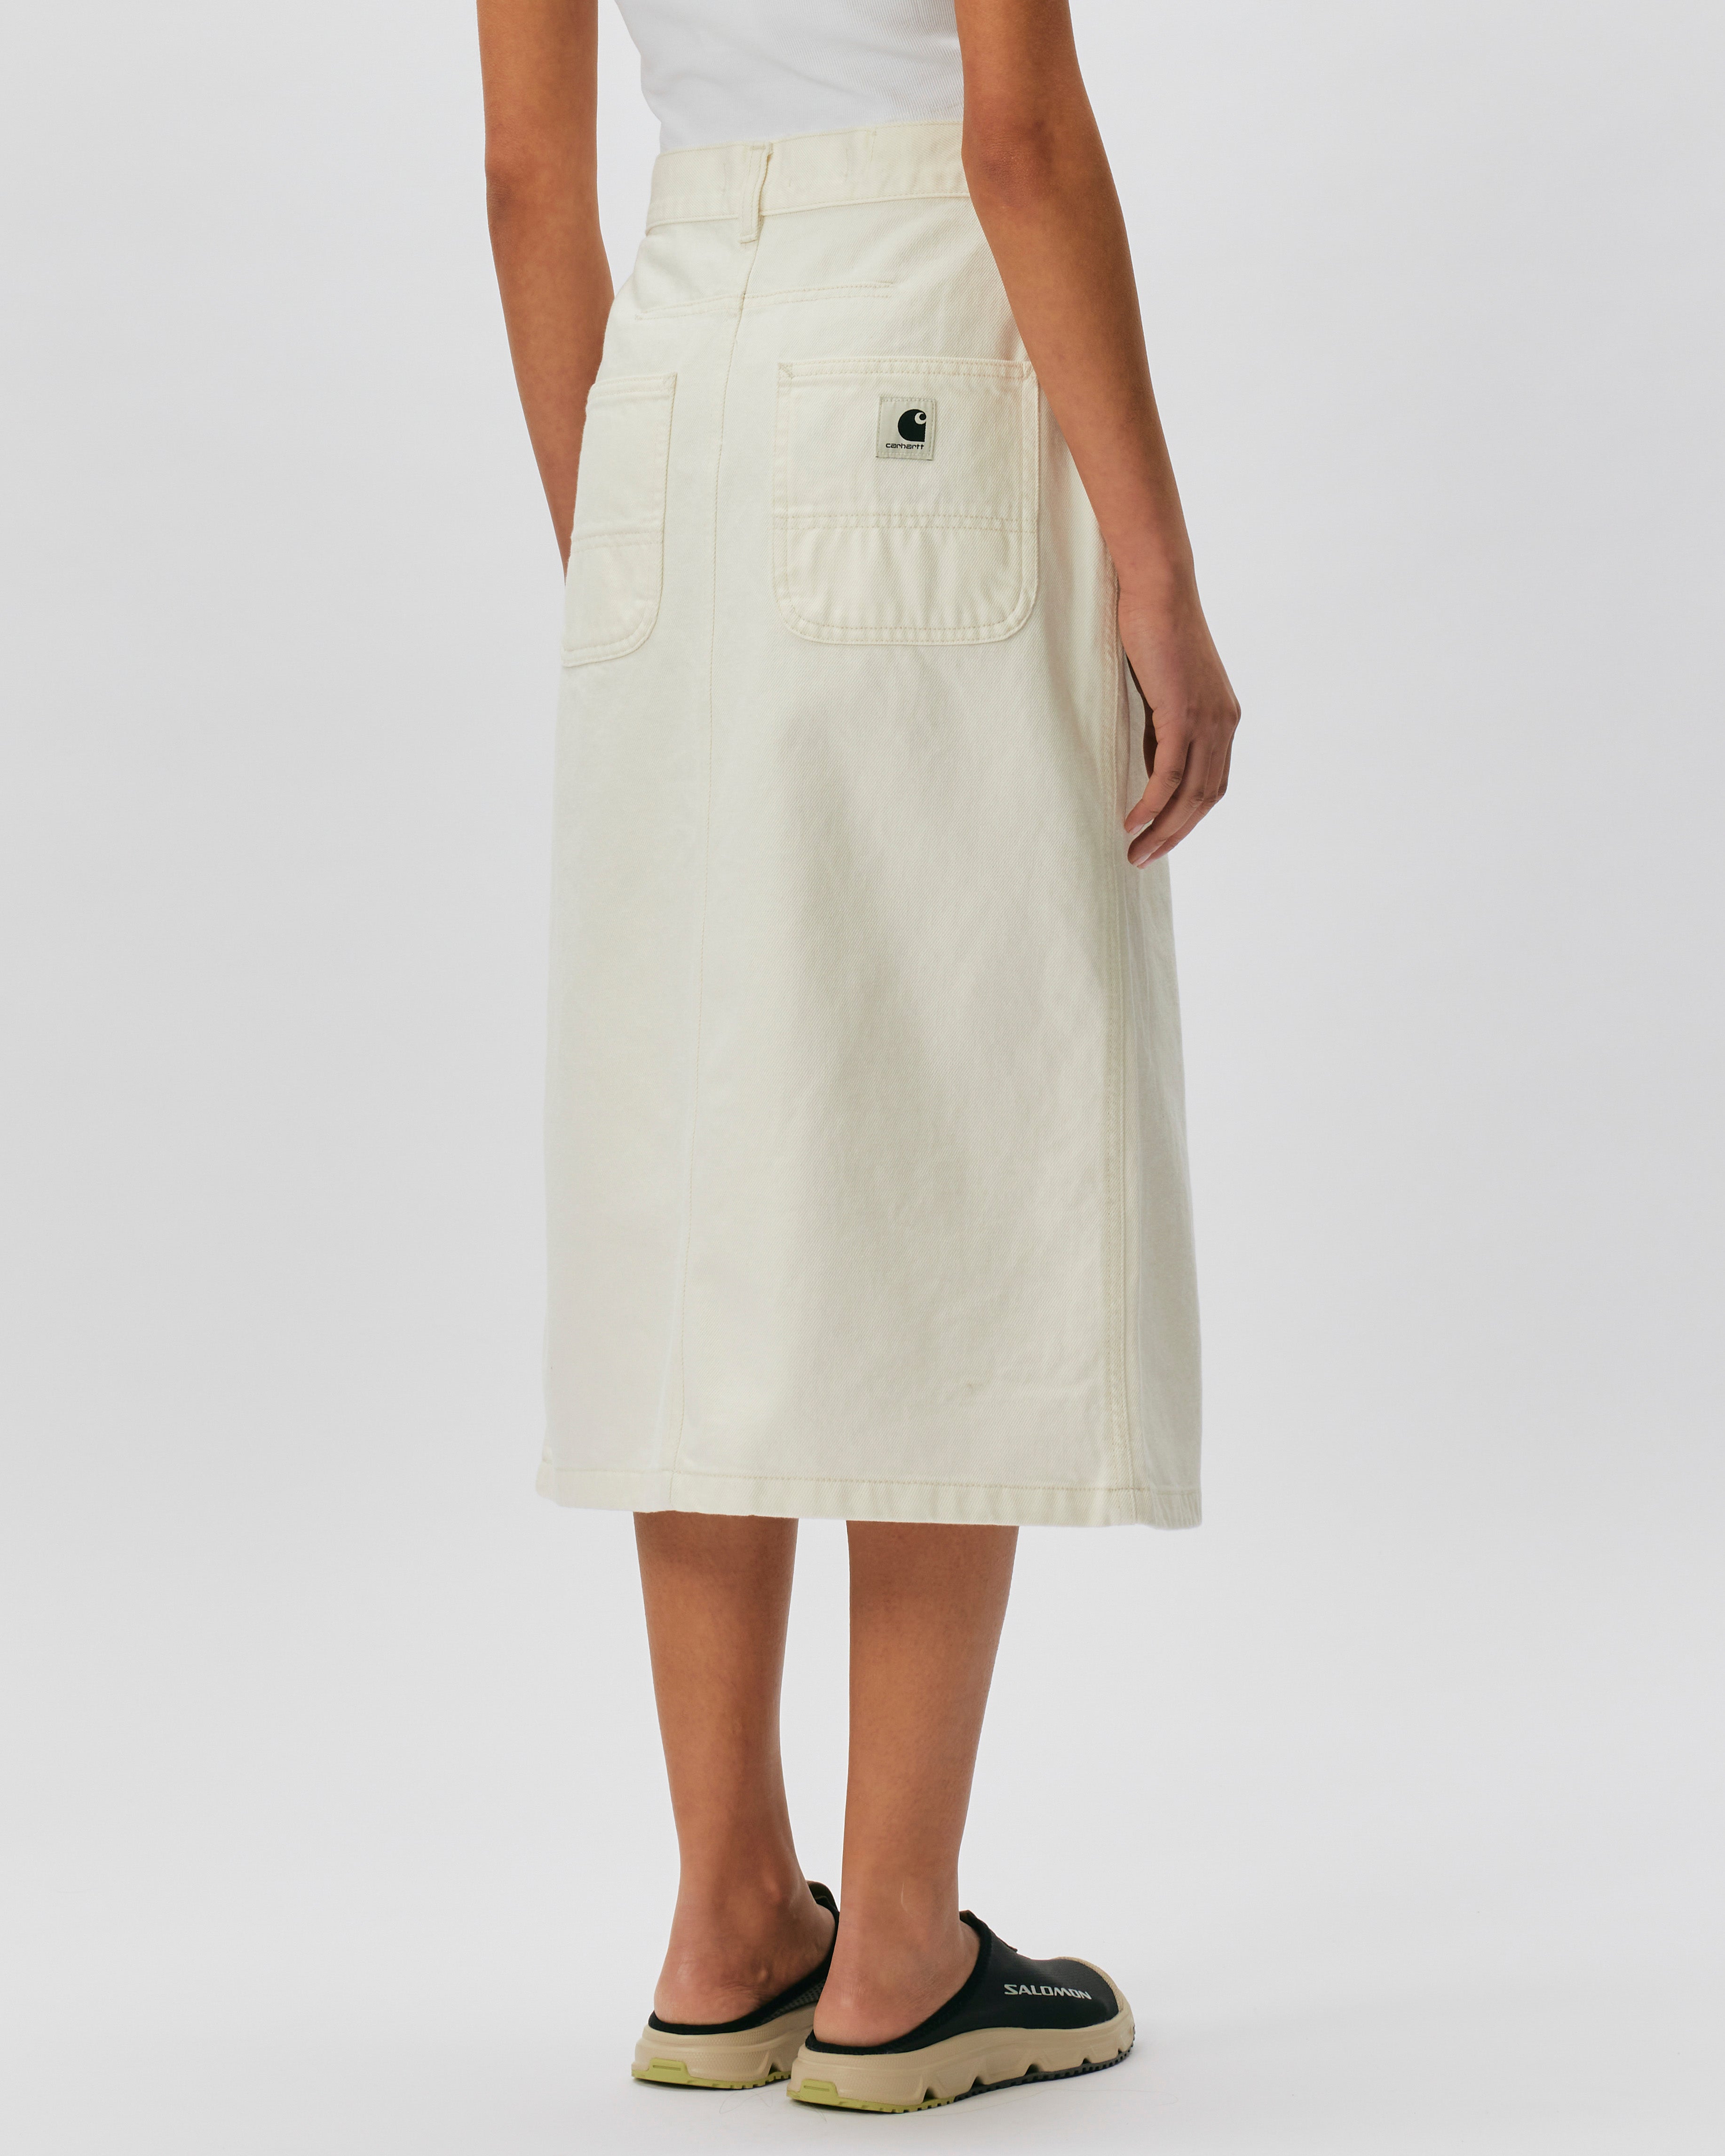 Carhartt WIP Colby Skirt White I033334-0202